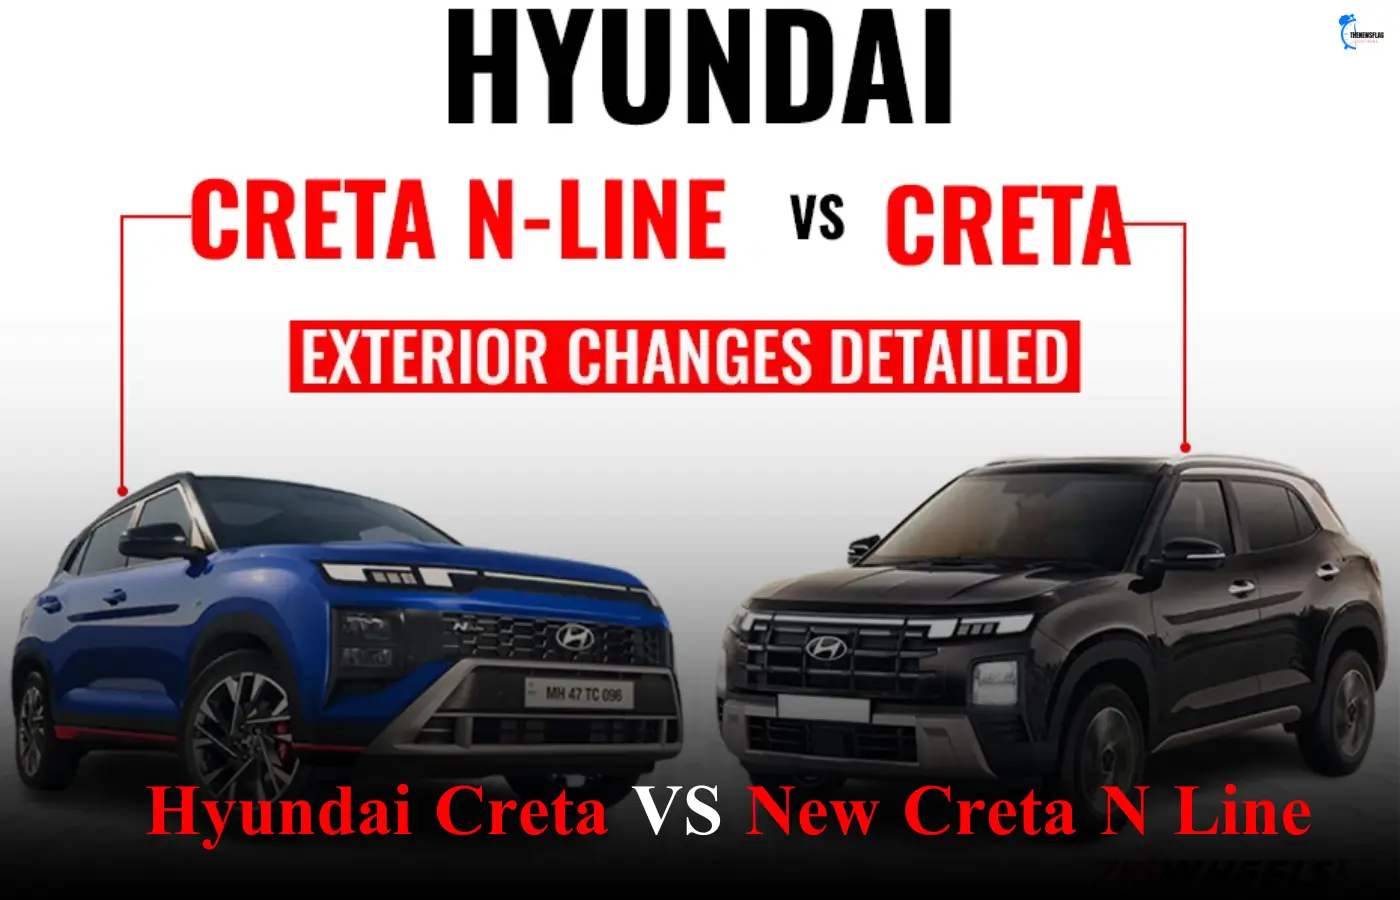 Hyundai Creta vs New Creta N Line